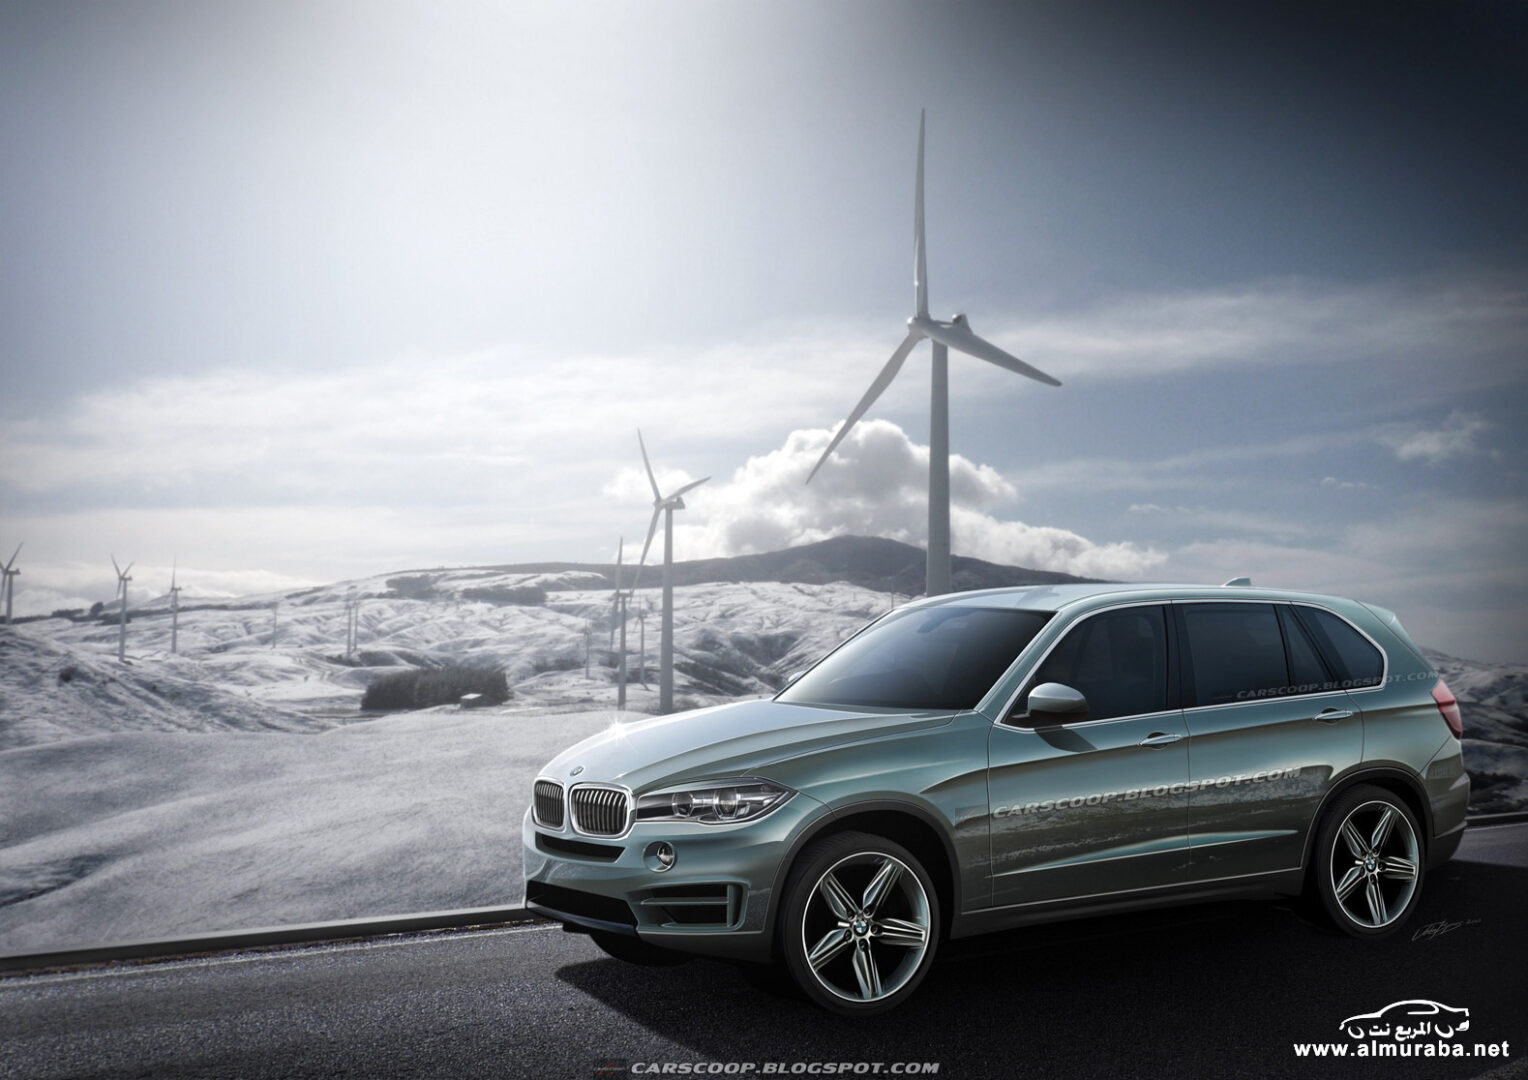 بي ام دبليو اكس فايف 2014 في أول صور له والتي ستحصل على تطويرات كبيرة BMW X5 3